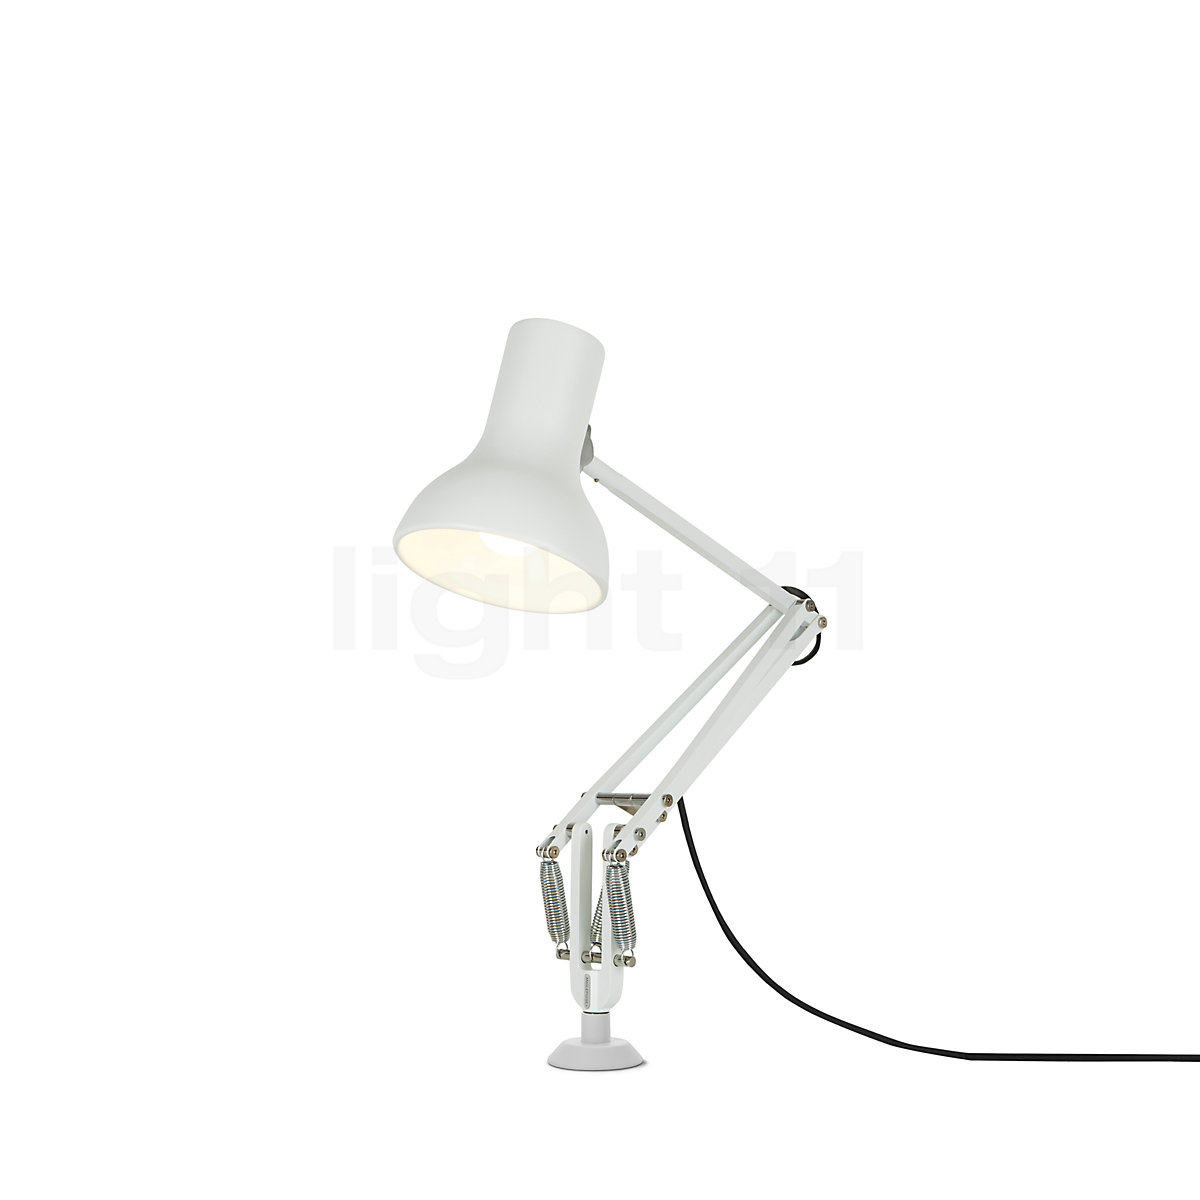 Pivot LED Desk Lamp